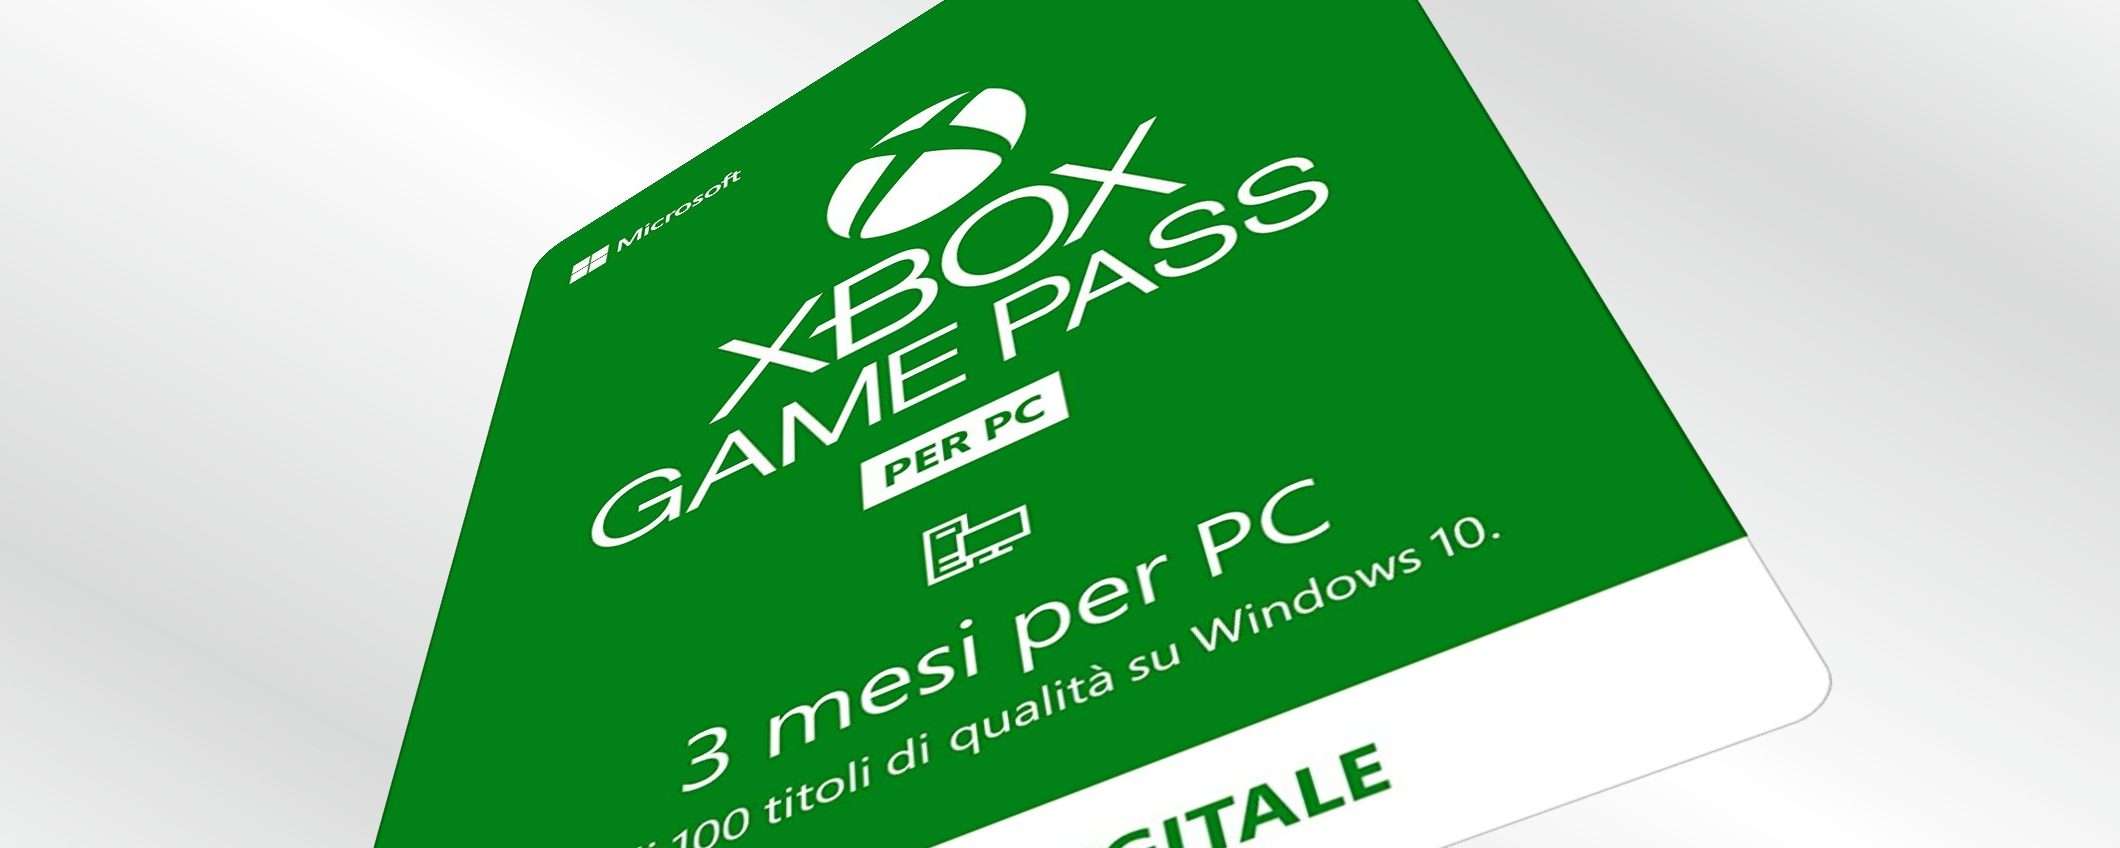 Abbonamenti Xbox: Microsoft promette miglioramenti